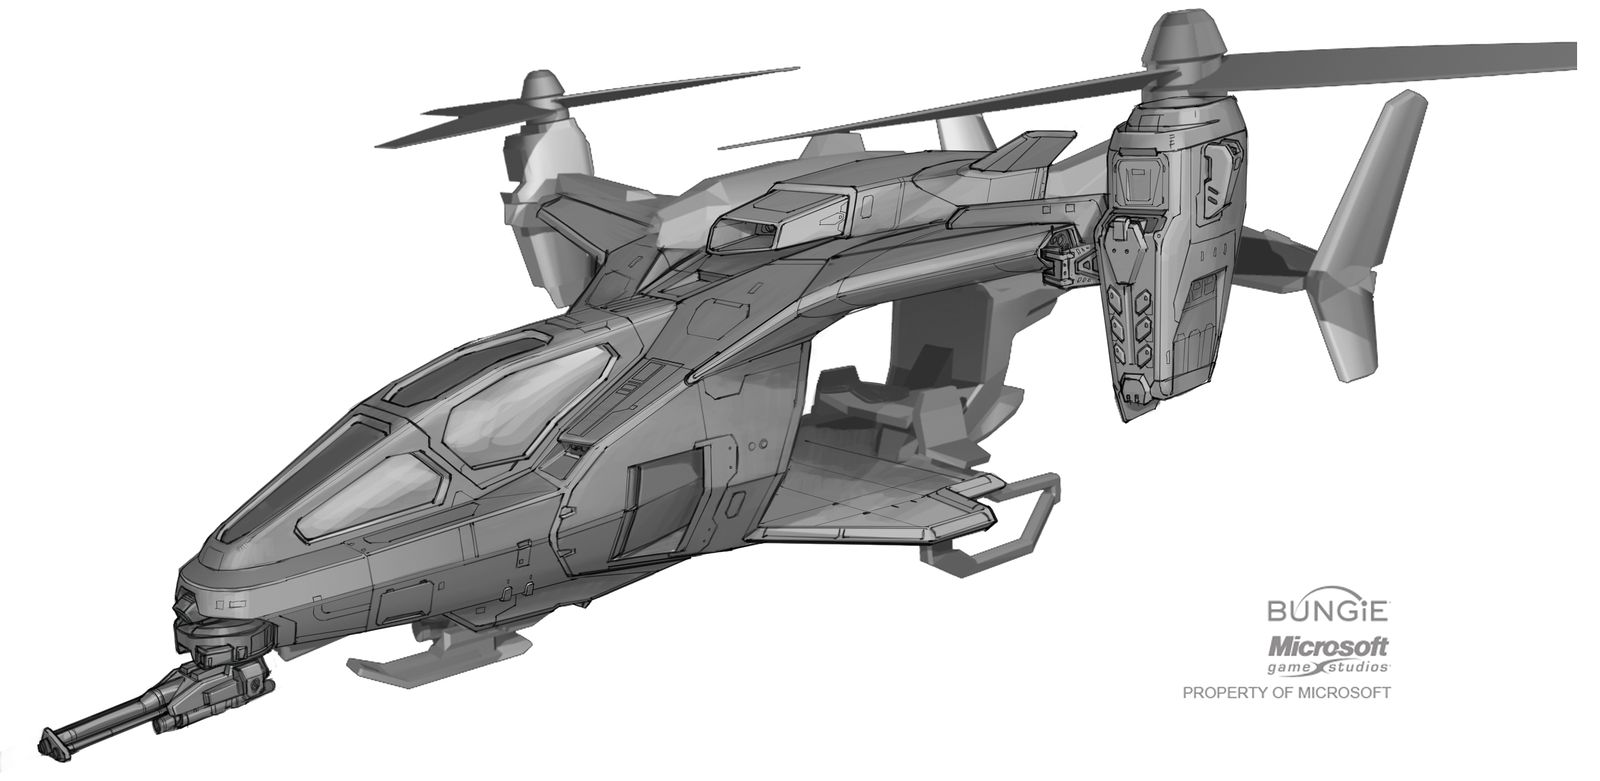 【PC游戏】HALO中的那些载具 —— UH-144猎鹰号通用直升机-第18张